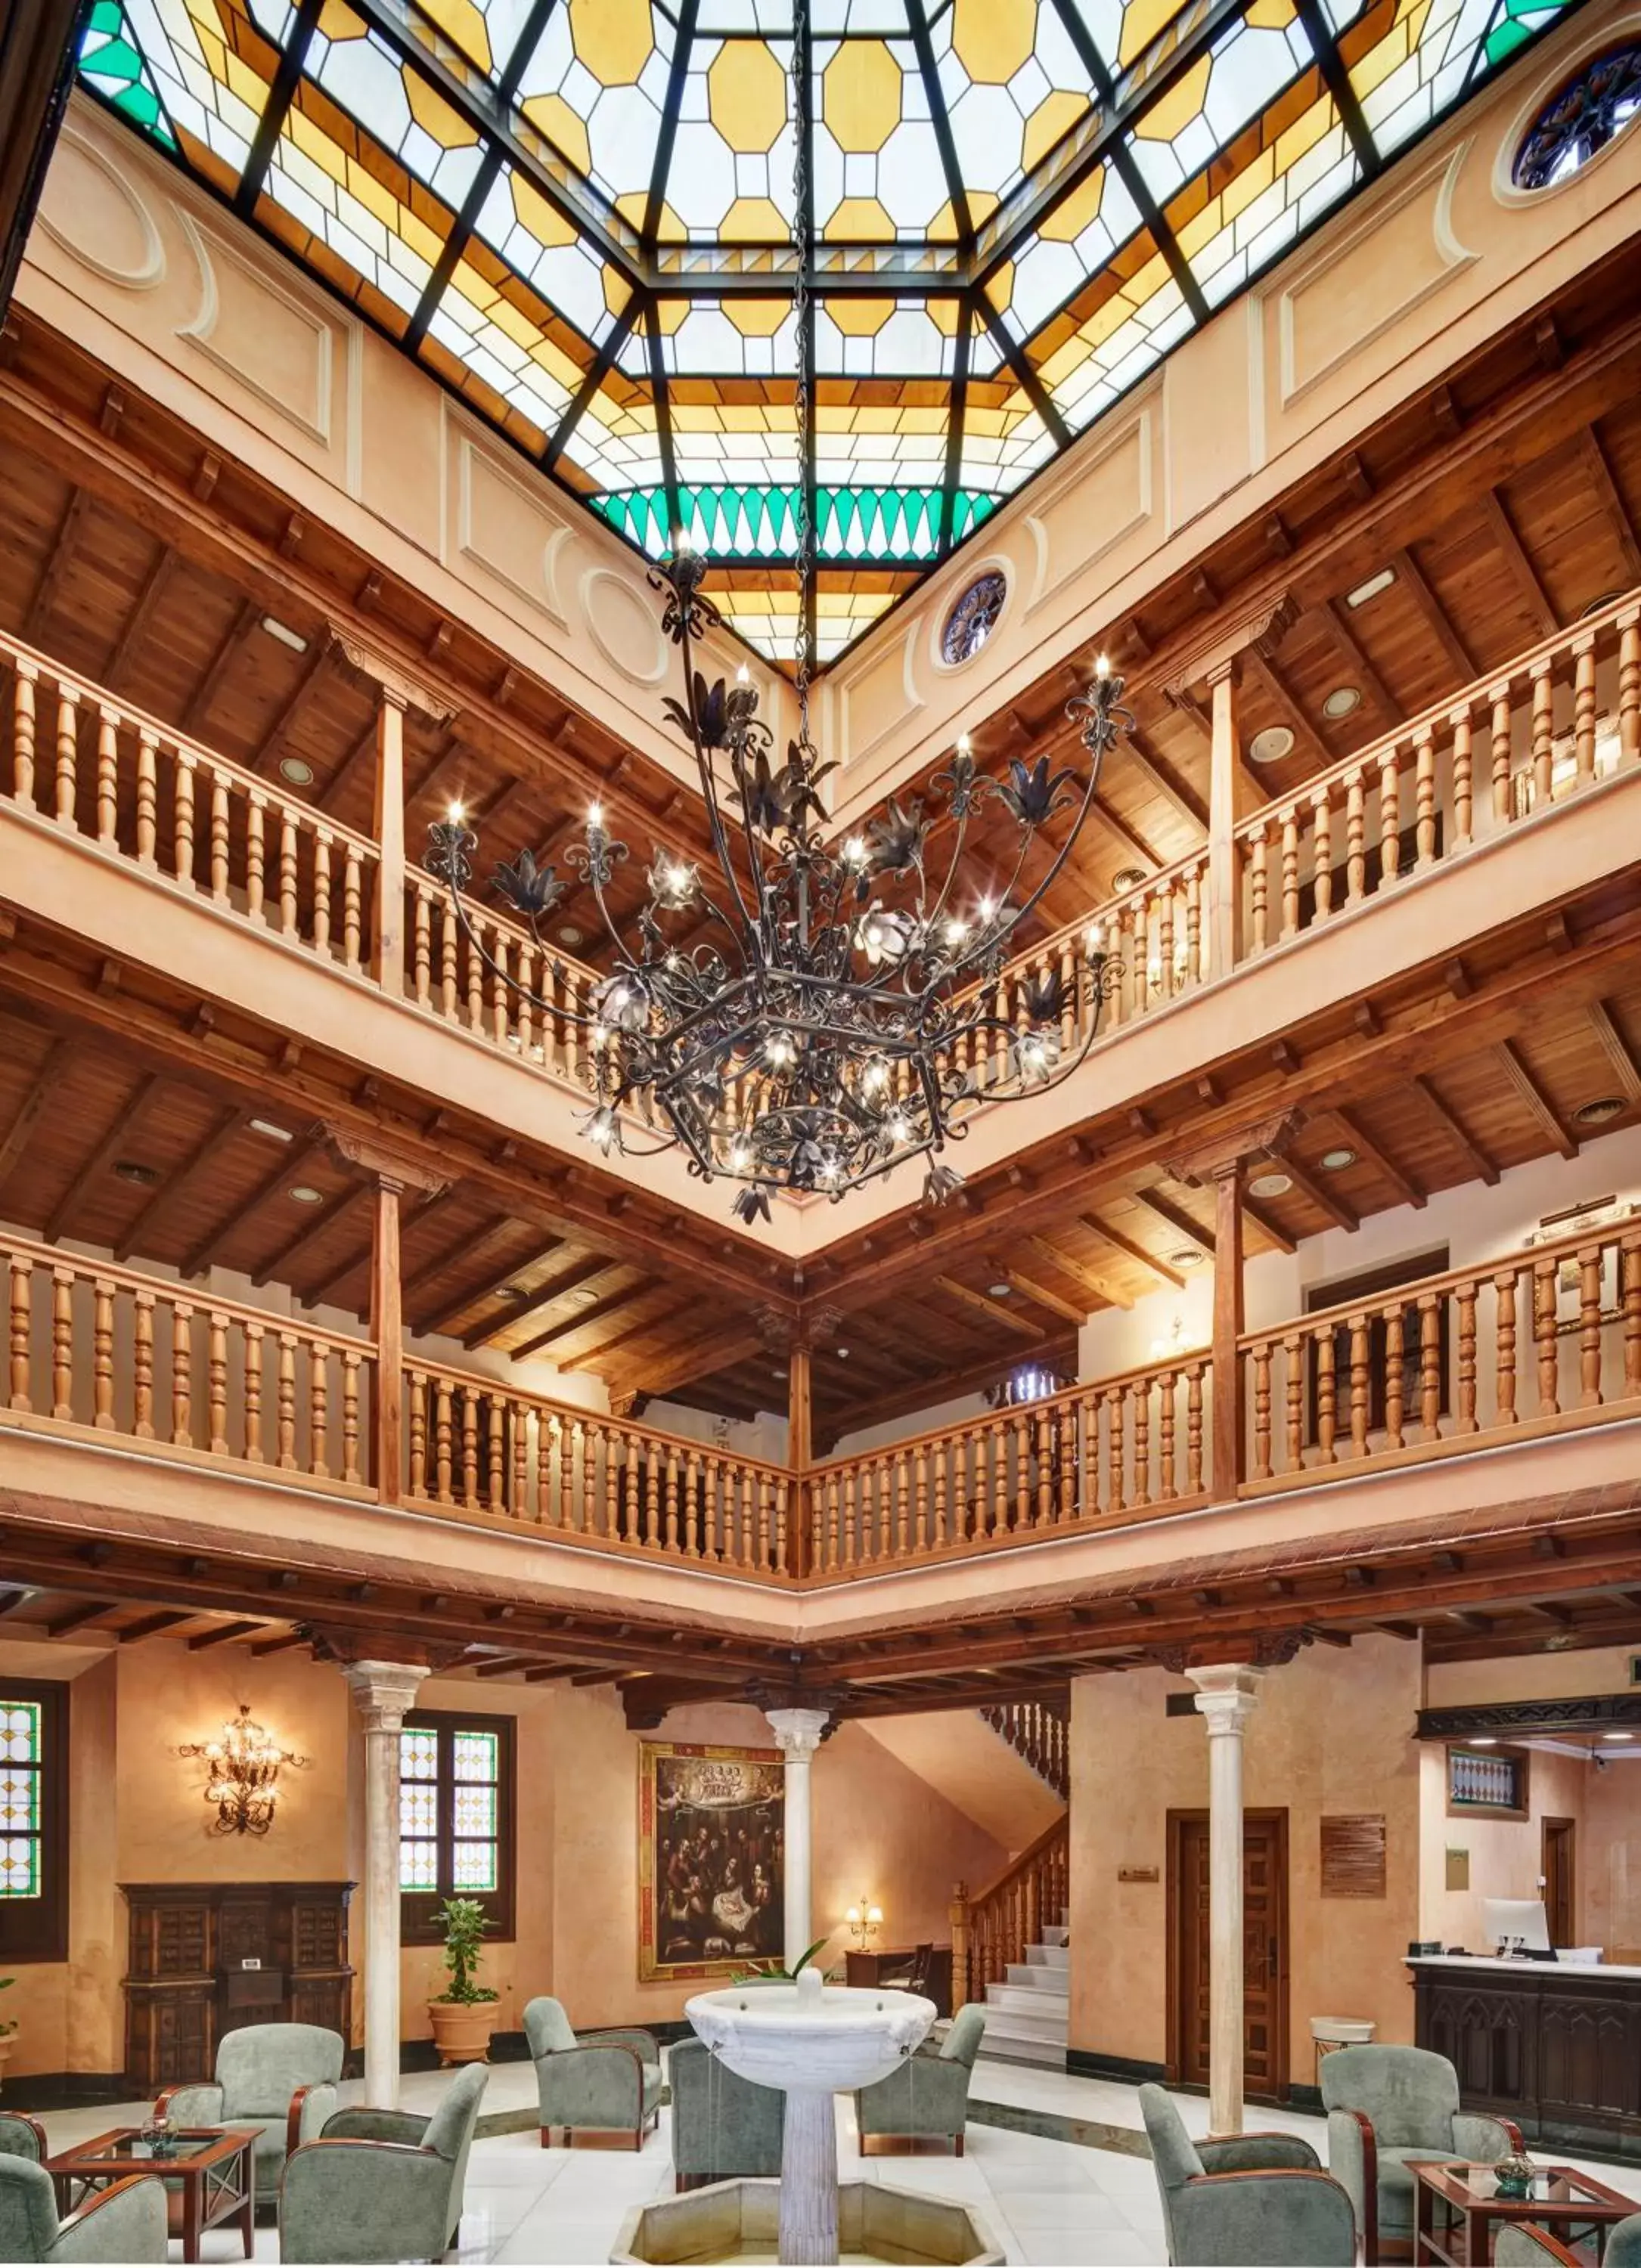 Lobby or reception in Sercotel Palacio de los Gamboa